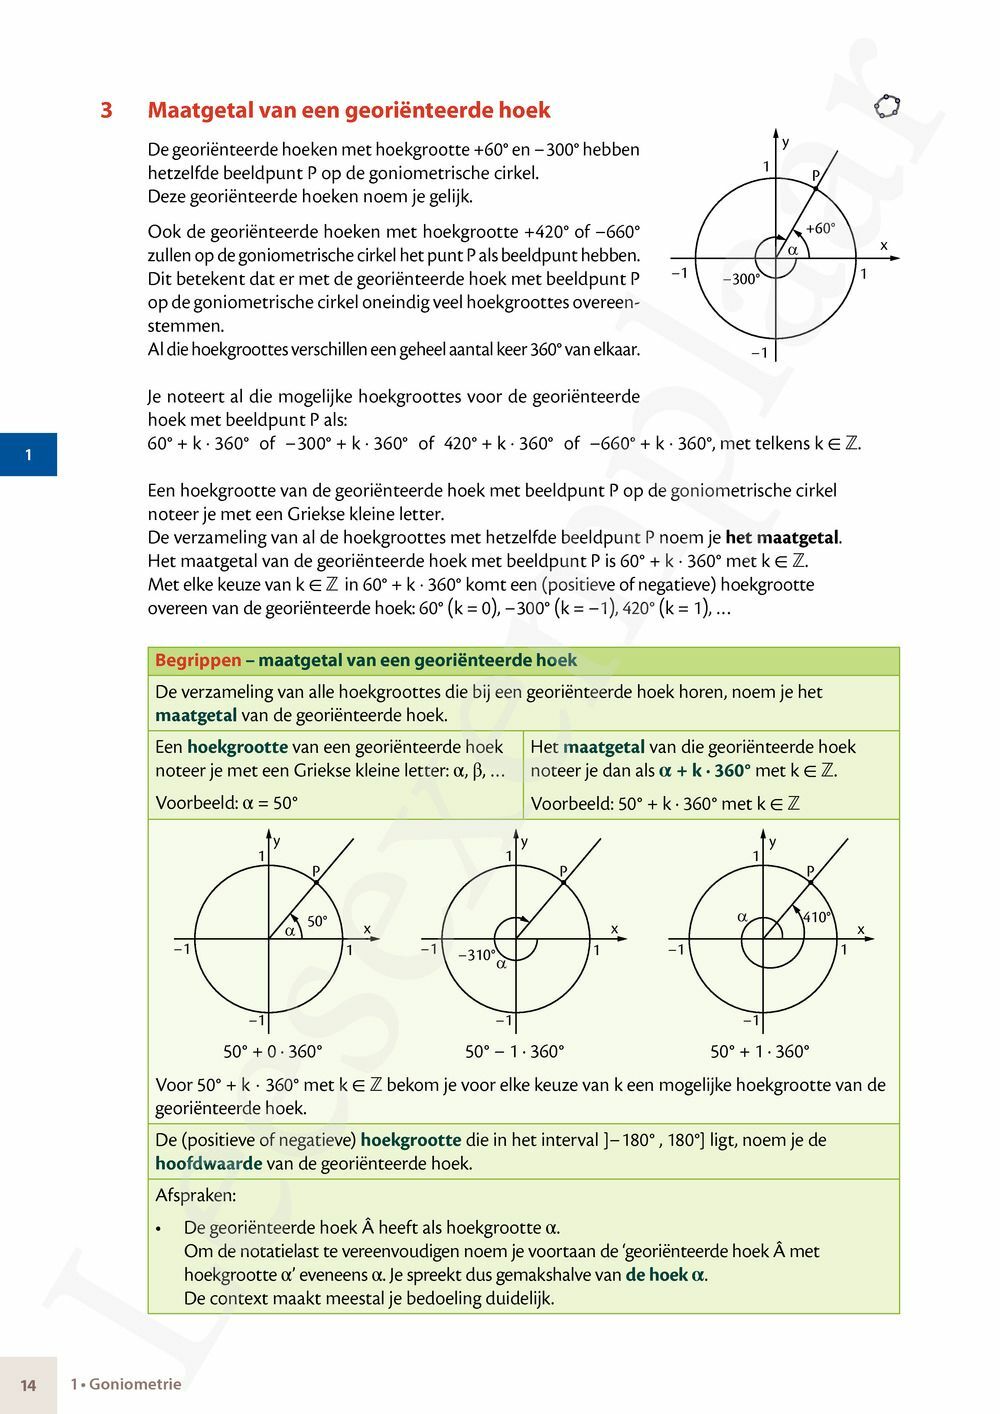 Preview: Matrix Wiskunde 5/6 Goniometrie, vectoren, ruimtemeetkunde Dubbele finaliteit Leerwerkboek (incl. Pelckmans Portaal)